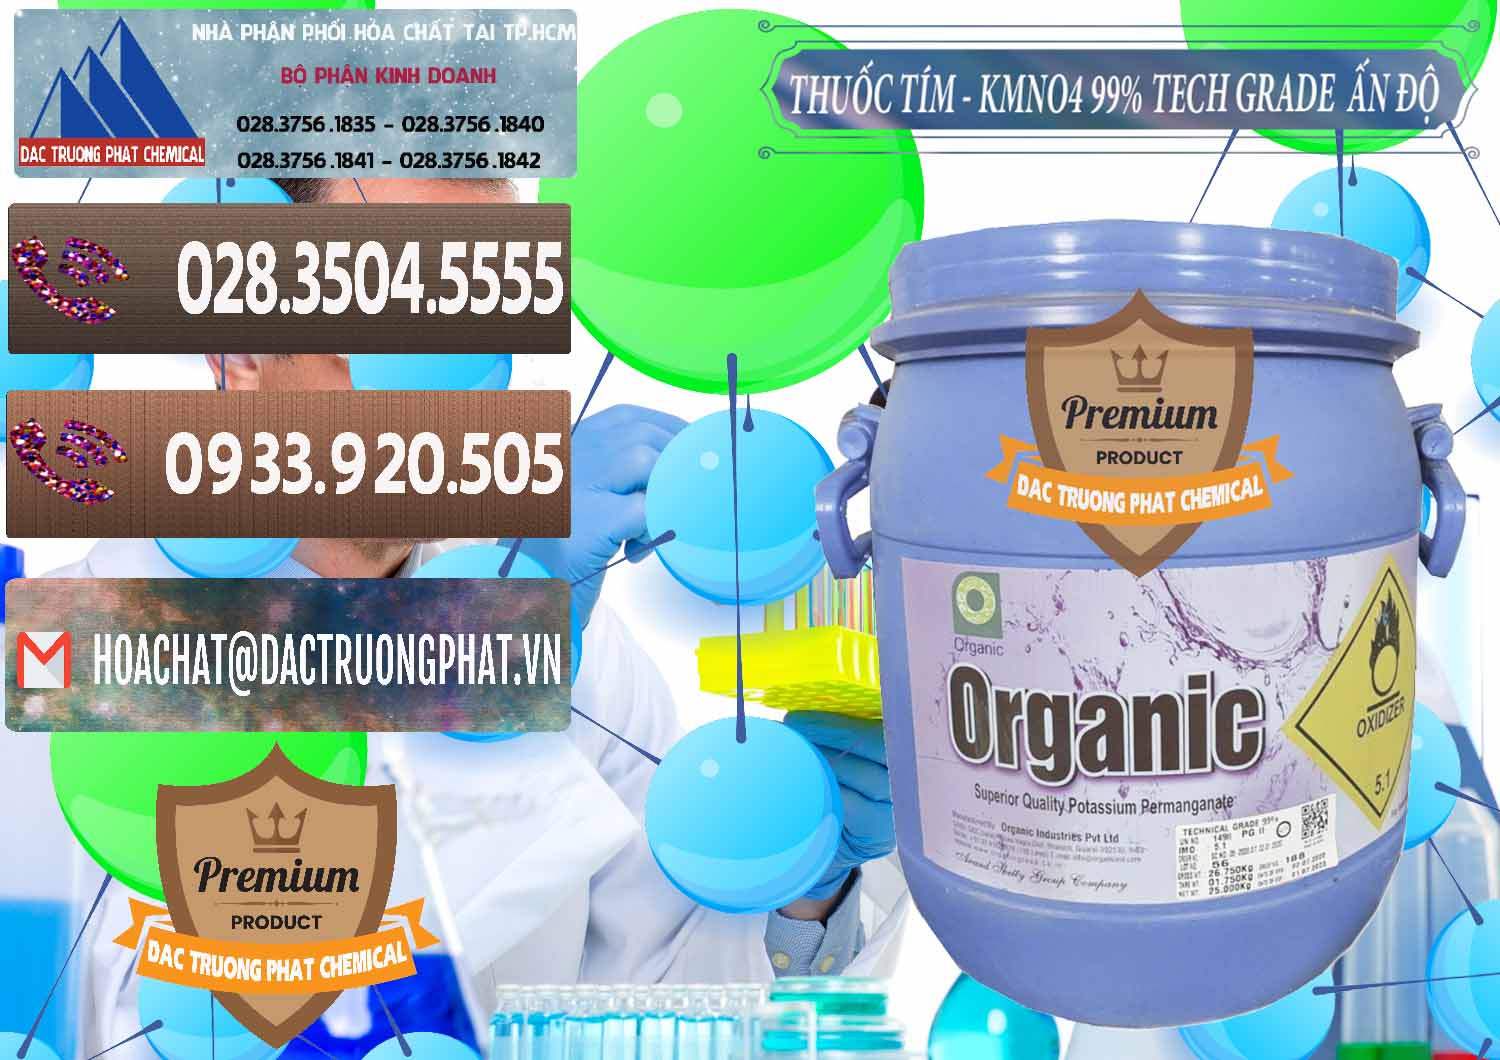 Cty nhập khẩu ( bán ) Thuốc Tím - KMNO4 99% Organic Group Ấn Độ India - 0250 - Công ty nhập khẩu ( phân phối ) hóa chất tại TP.HCM - hoachatviet.net